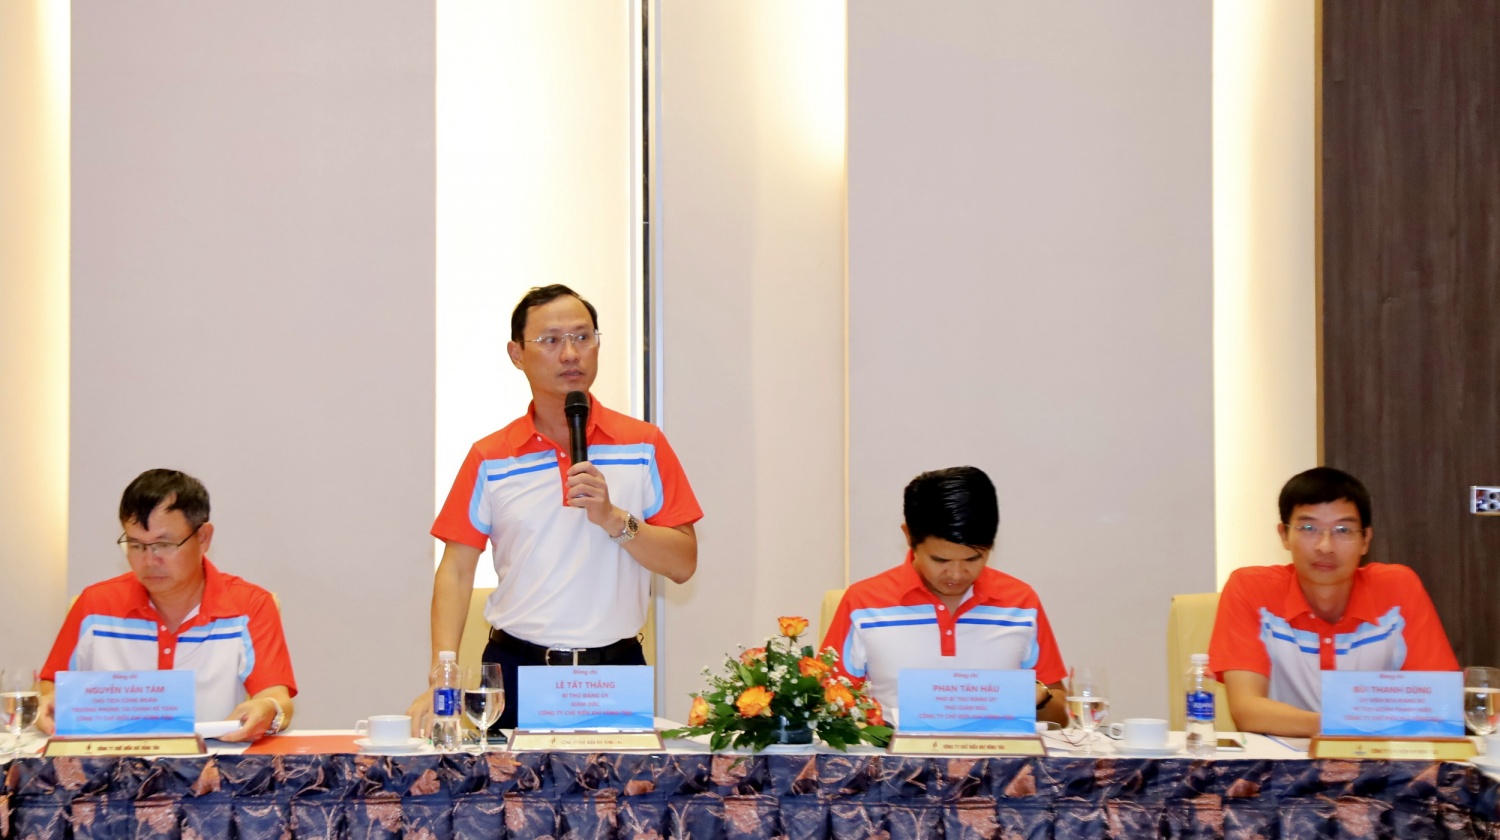 Hình 1: Ông Lê Tất Thắng - Bí thư Đảng ủy, Giám đốc PV GAS VUNG TAU phát biểu tại diễn đàn